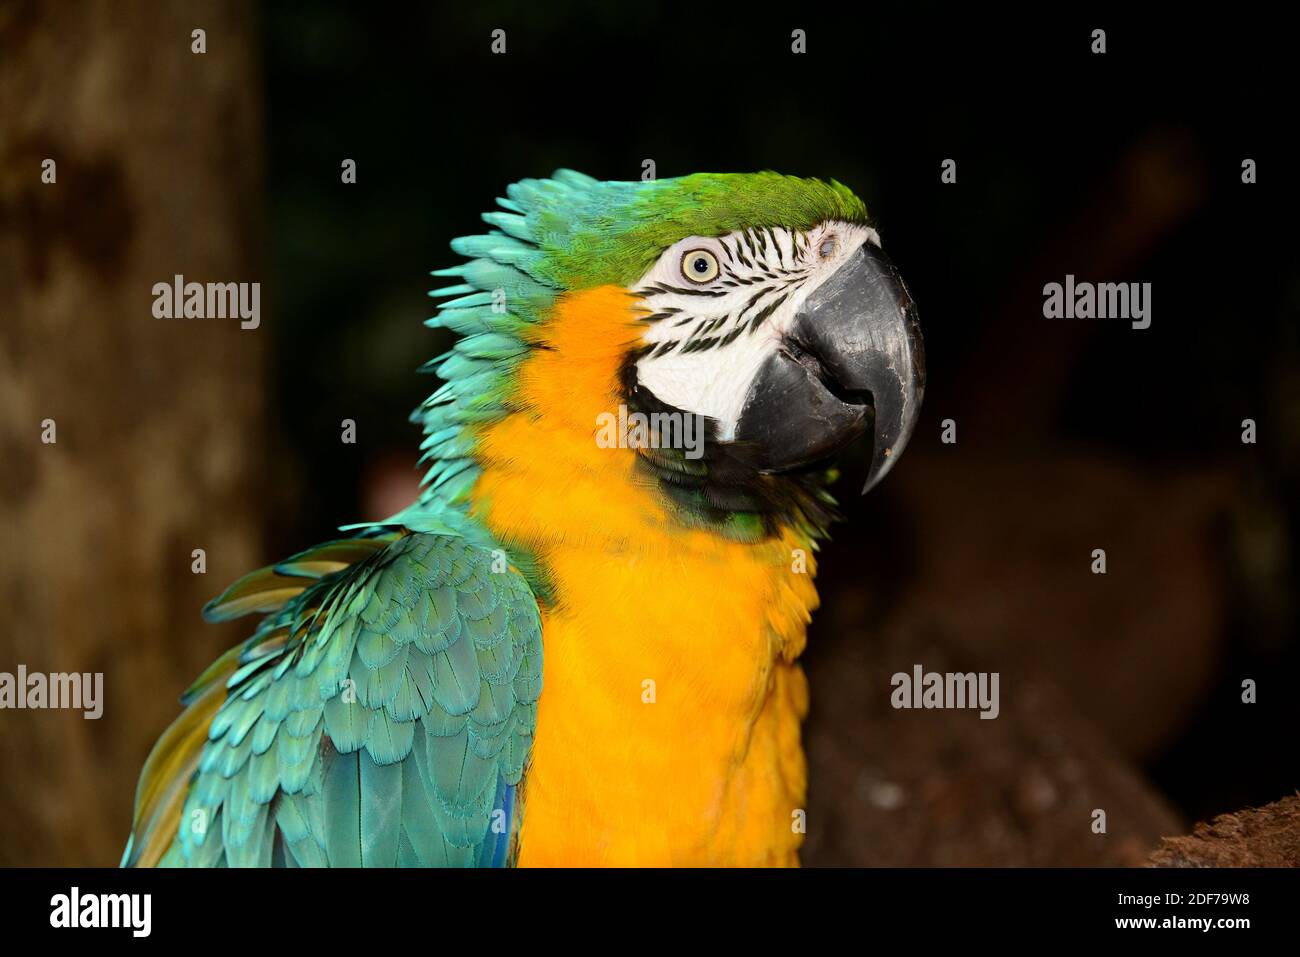 La macaw bleu et jaune (Ara ararauna) est un perroquet originaire de l'Amérique du Sud tropicale. Cette photo a été prise au Brésil. Banque D'Images